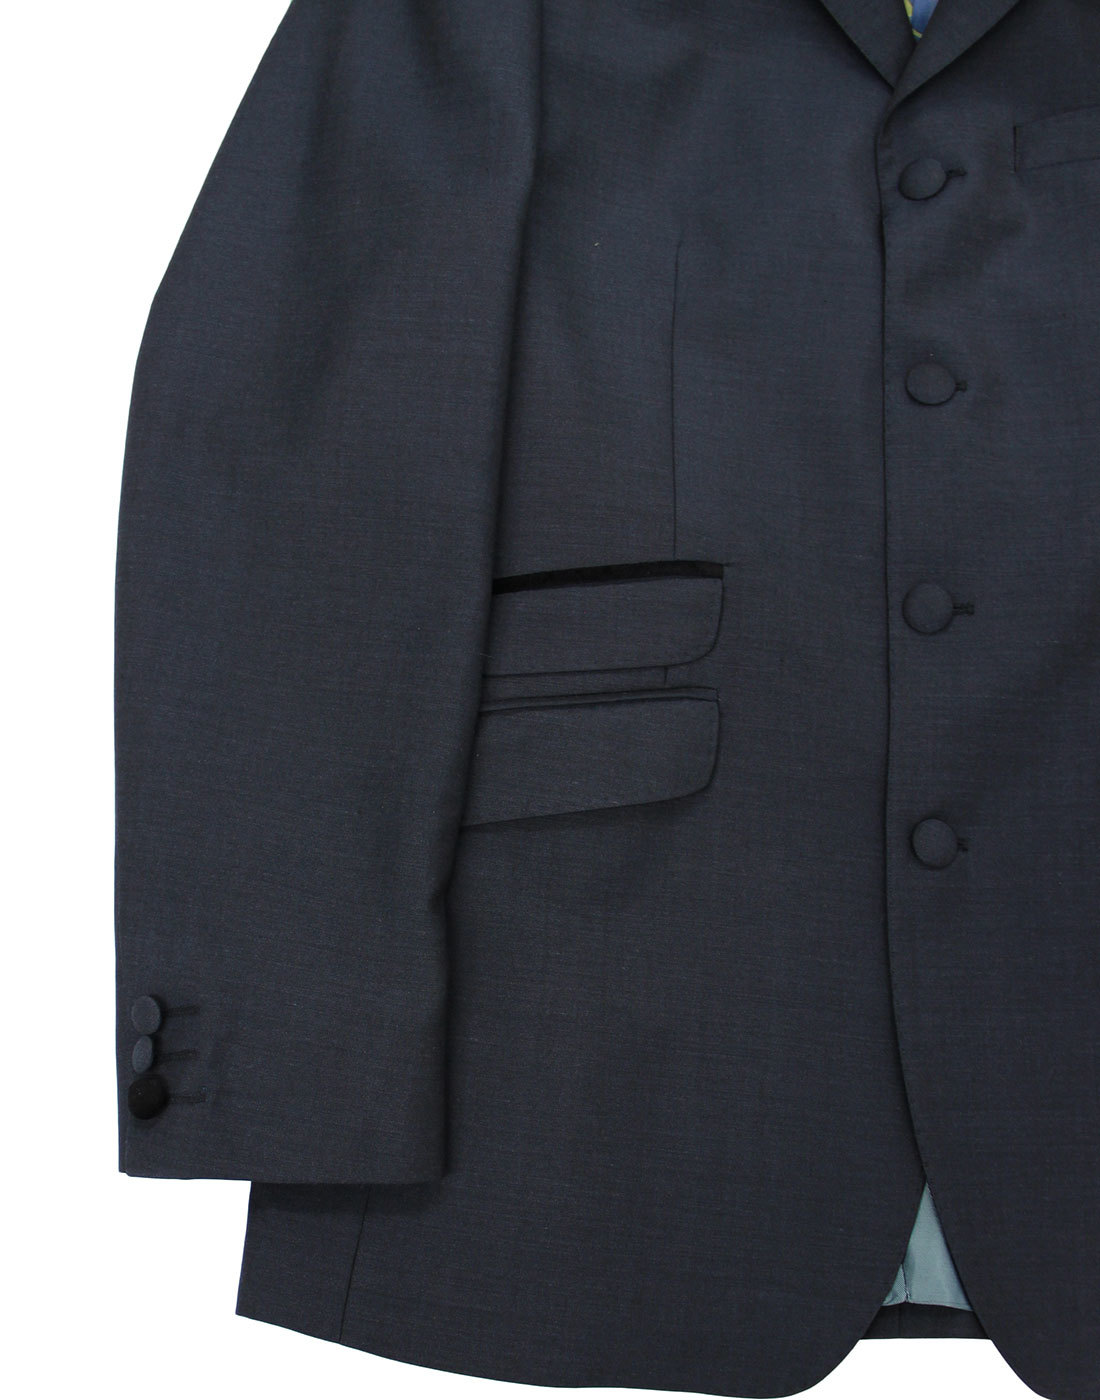 MADCAP ENGLAND 60s Mod 4 Button Velvet Collar Mohair Suit Jacket